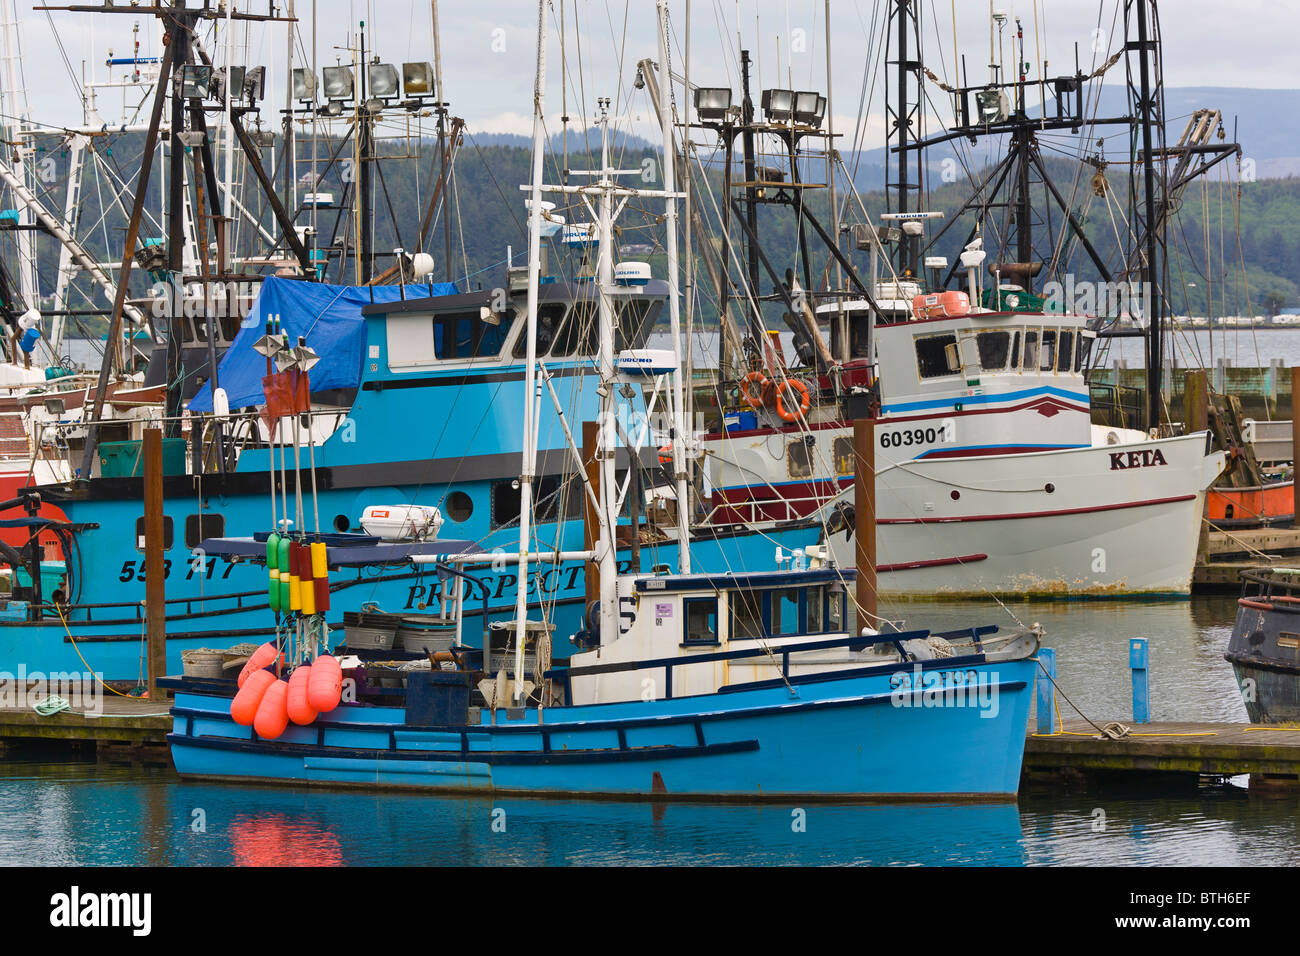 Bateaux de pêche commerciale dans la région de marina sur la rivière Siuslaw Florence dans l'Oregon Banque D'Images